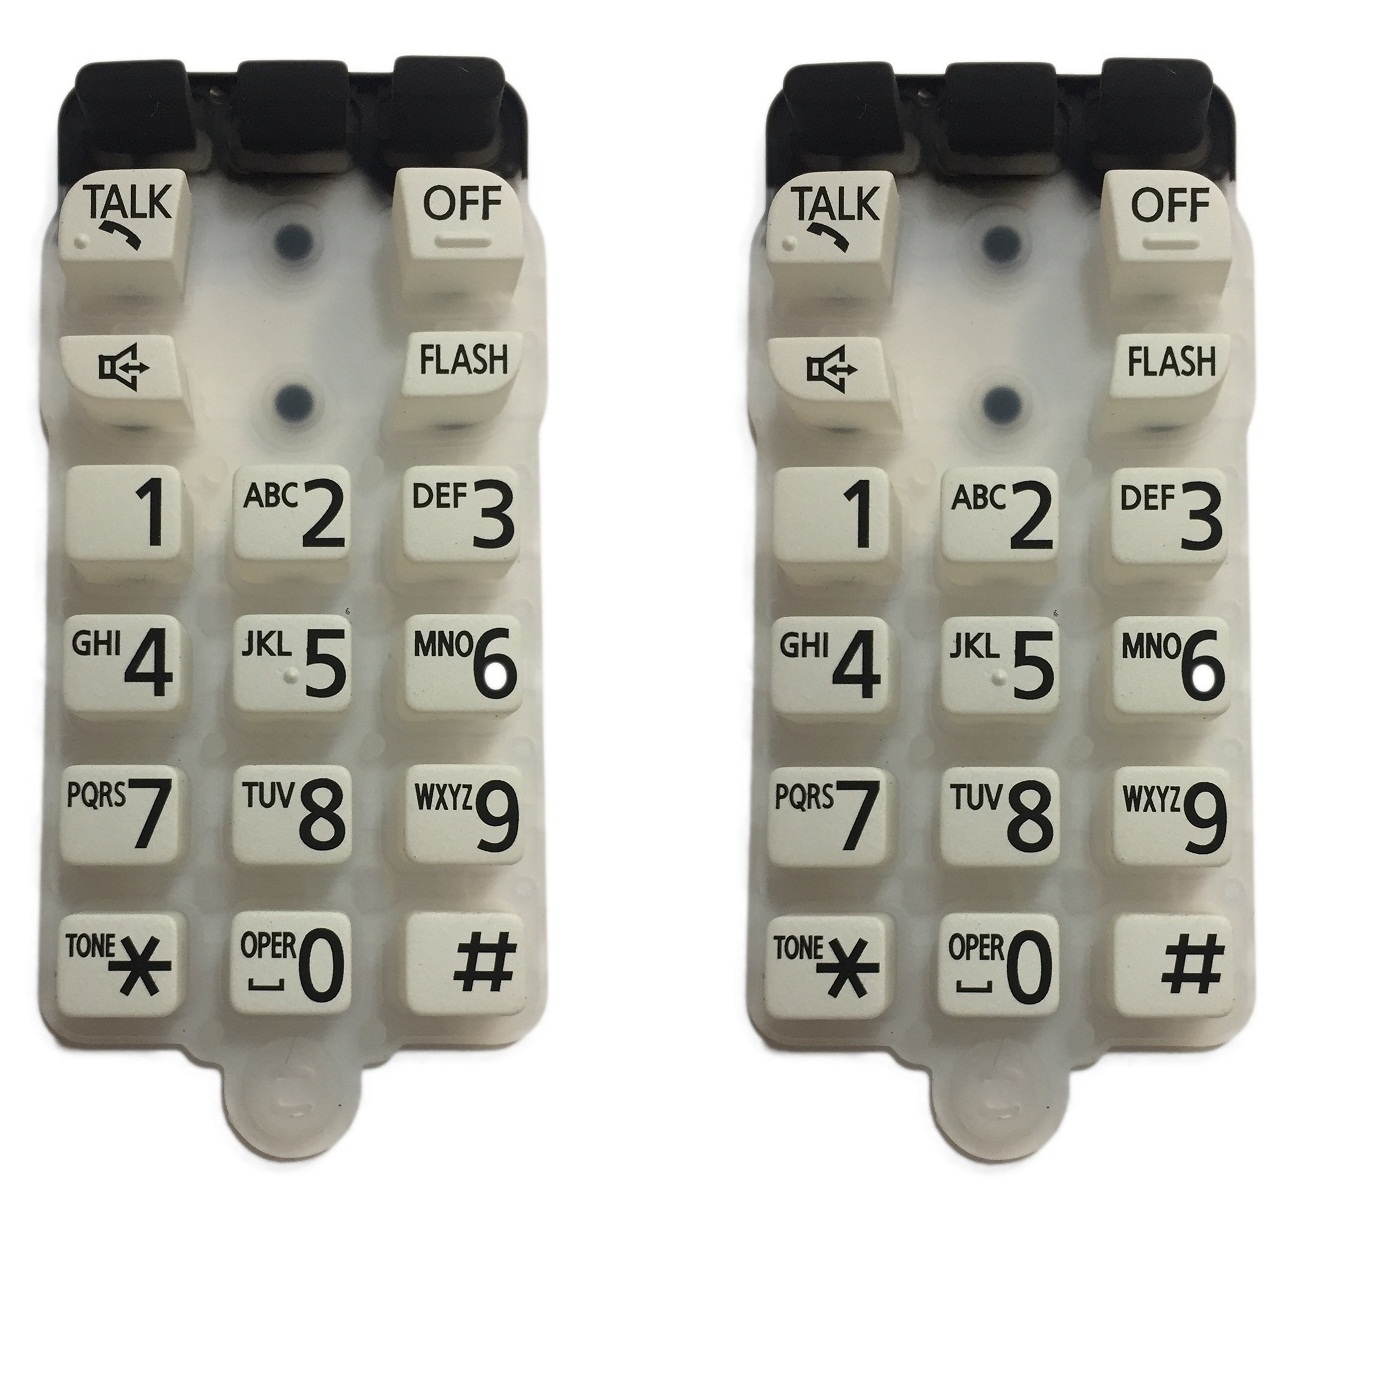 شماره گیر مدل 6461-6441 مناسب تلفن پاناسونیک بسته 2 عددی